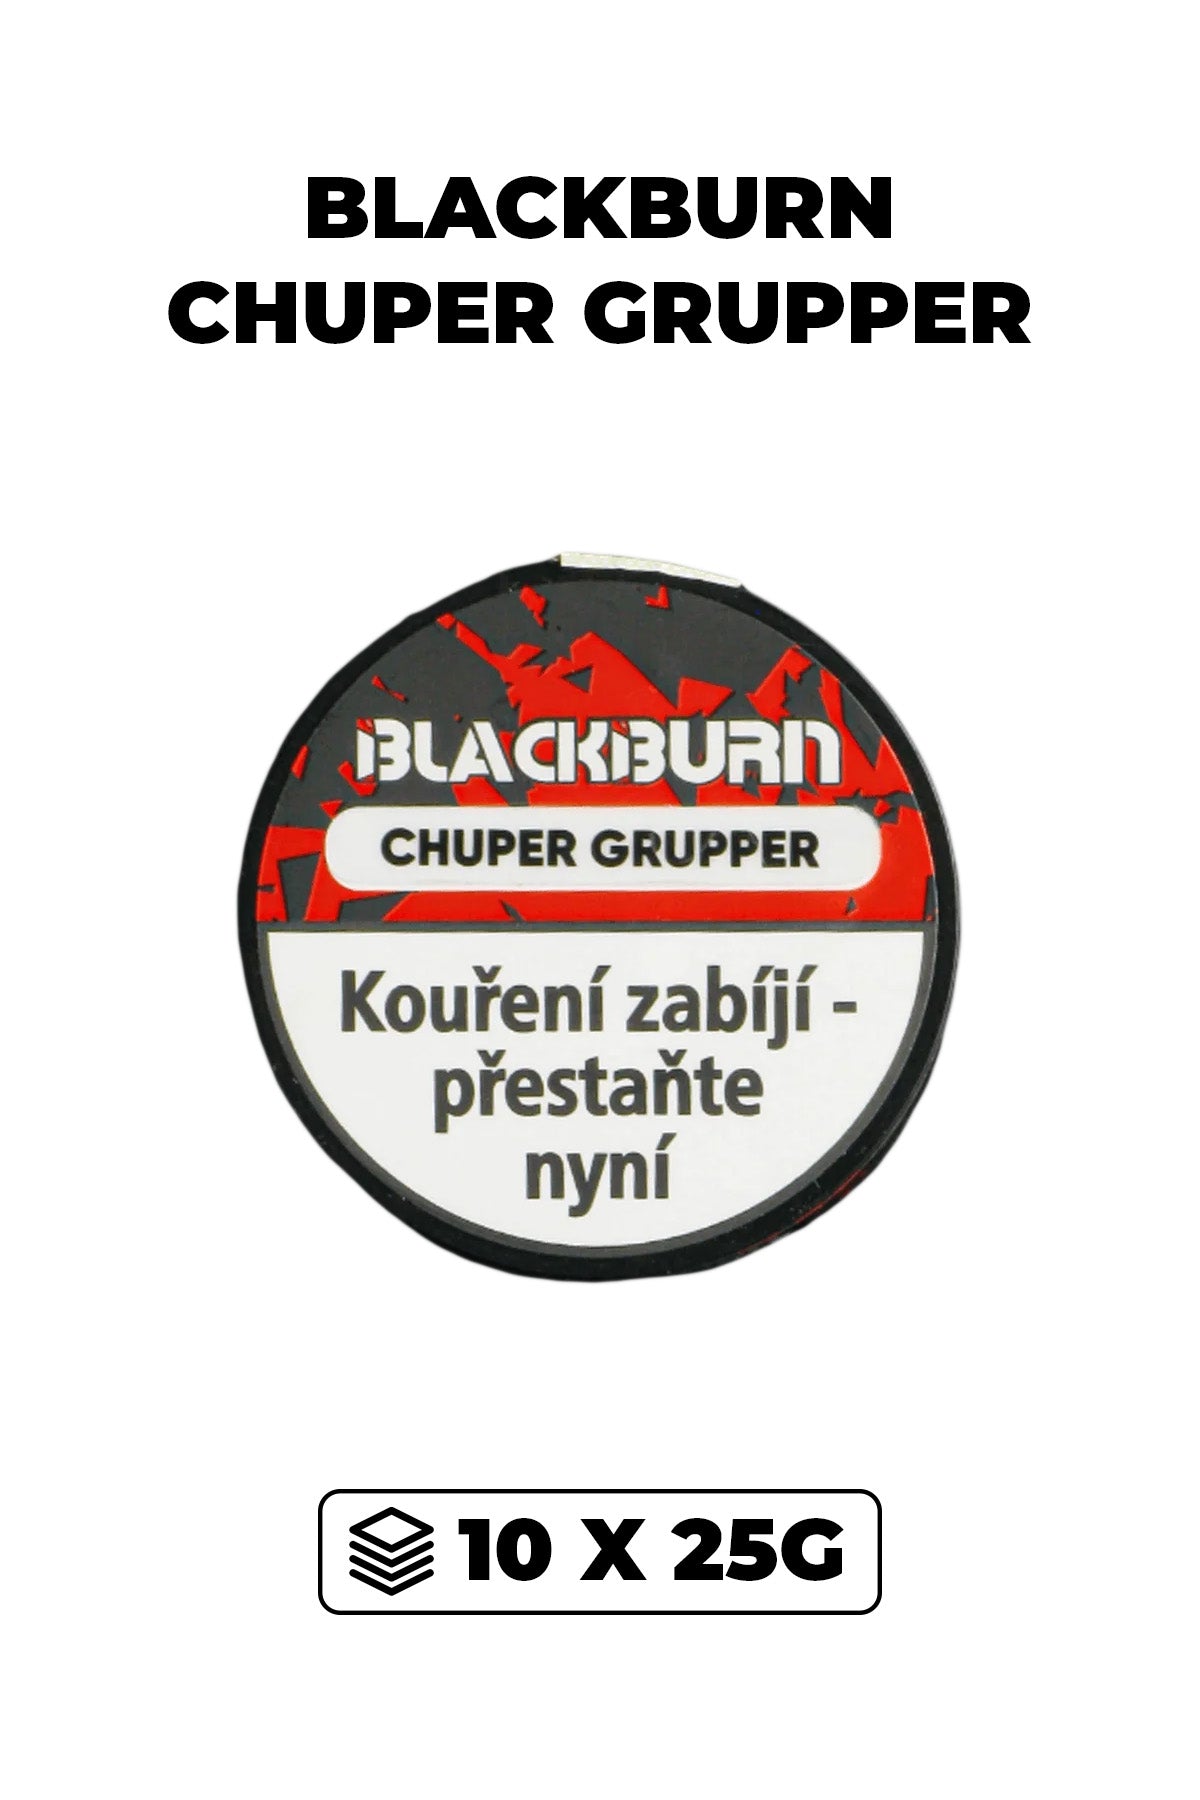 Tabák - BlackBurn 10x25g - Chuper Grupper